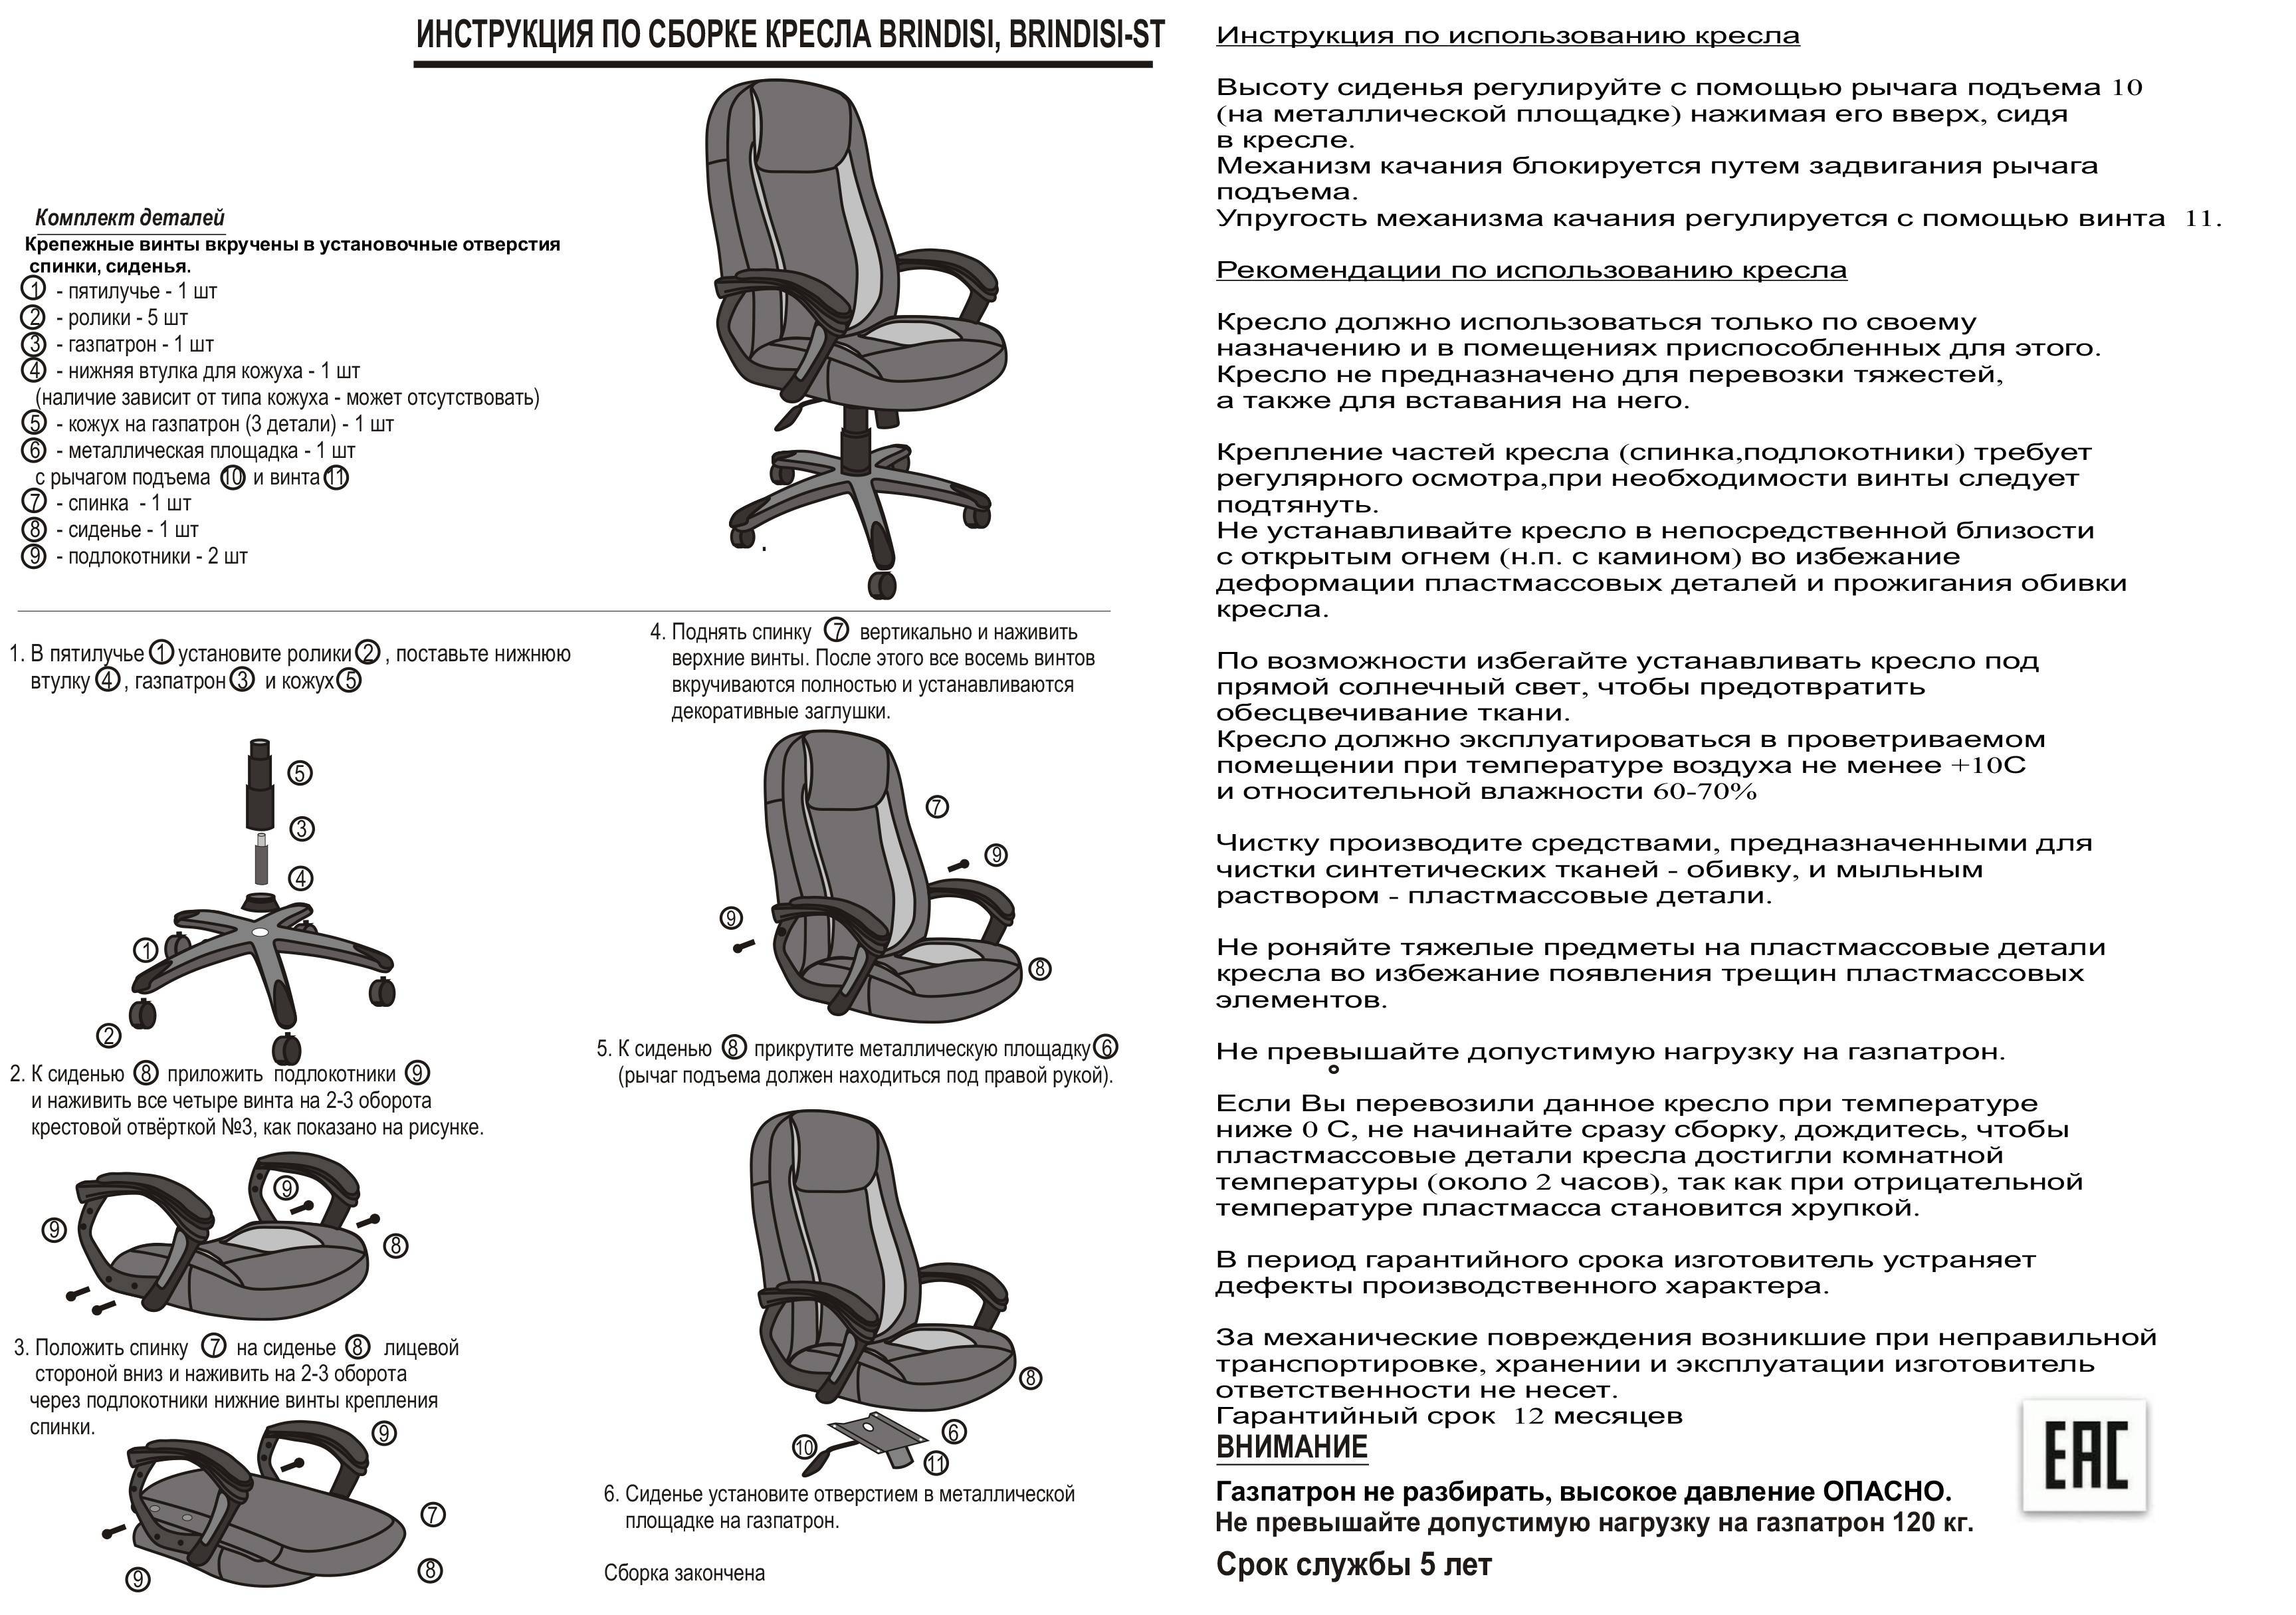 Типы механизмов для кресла: топ-ган, deep tilt, мультиблок